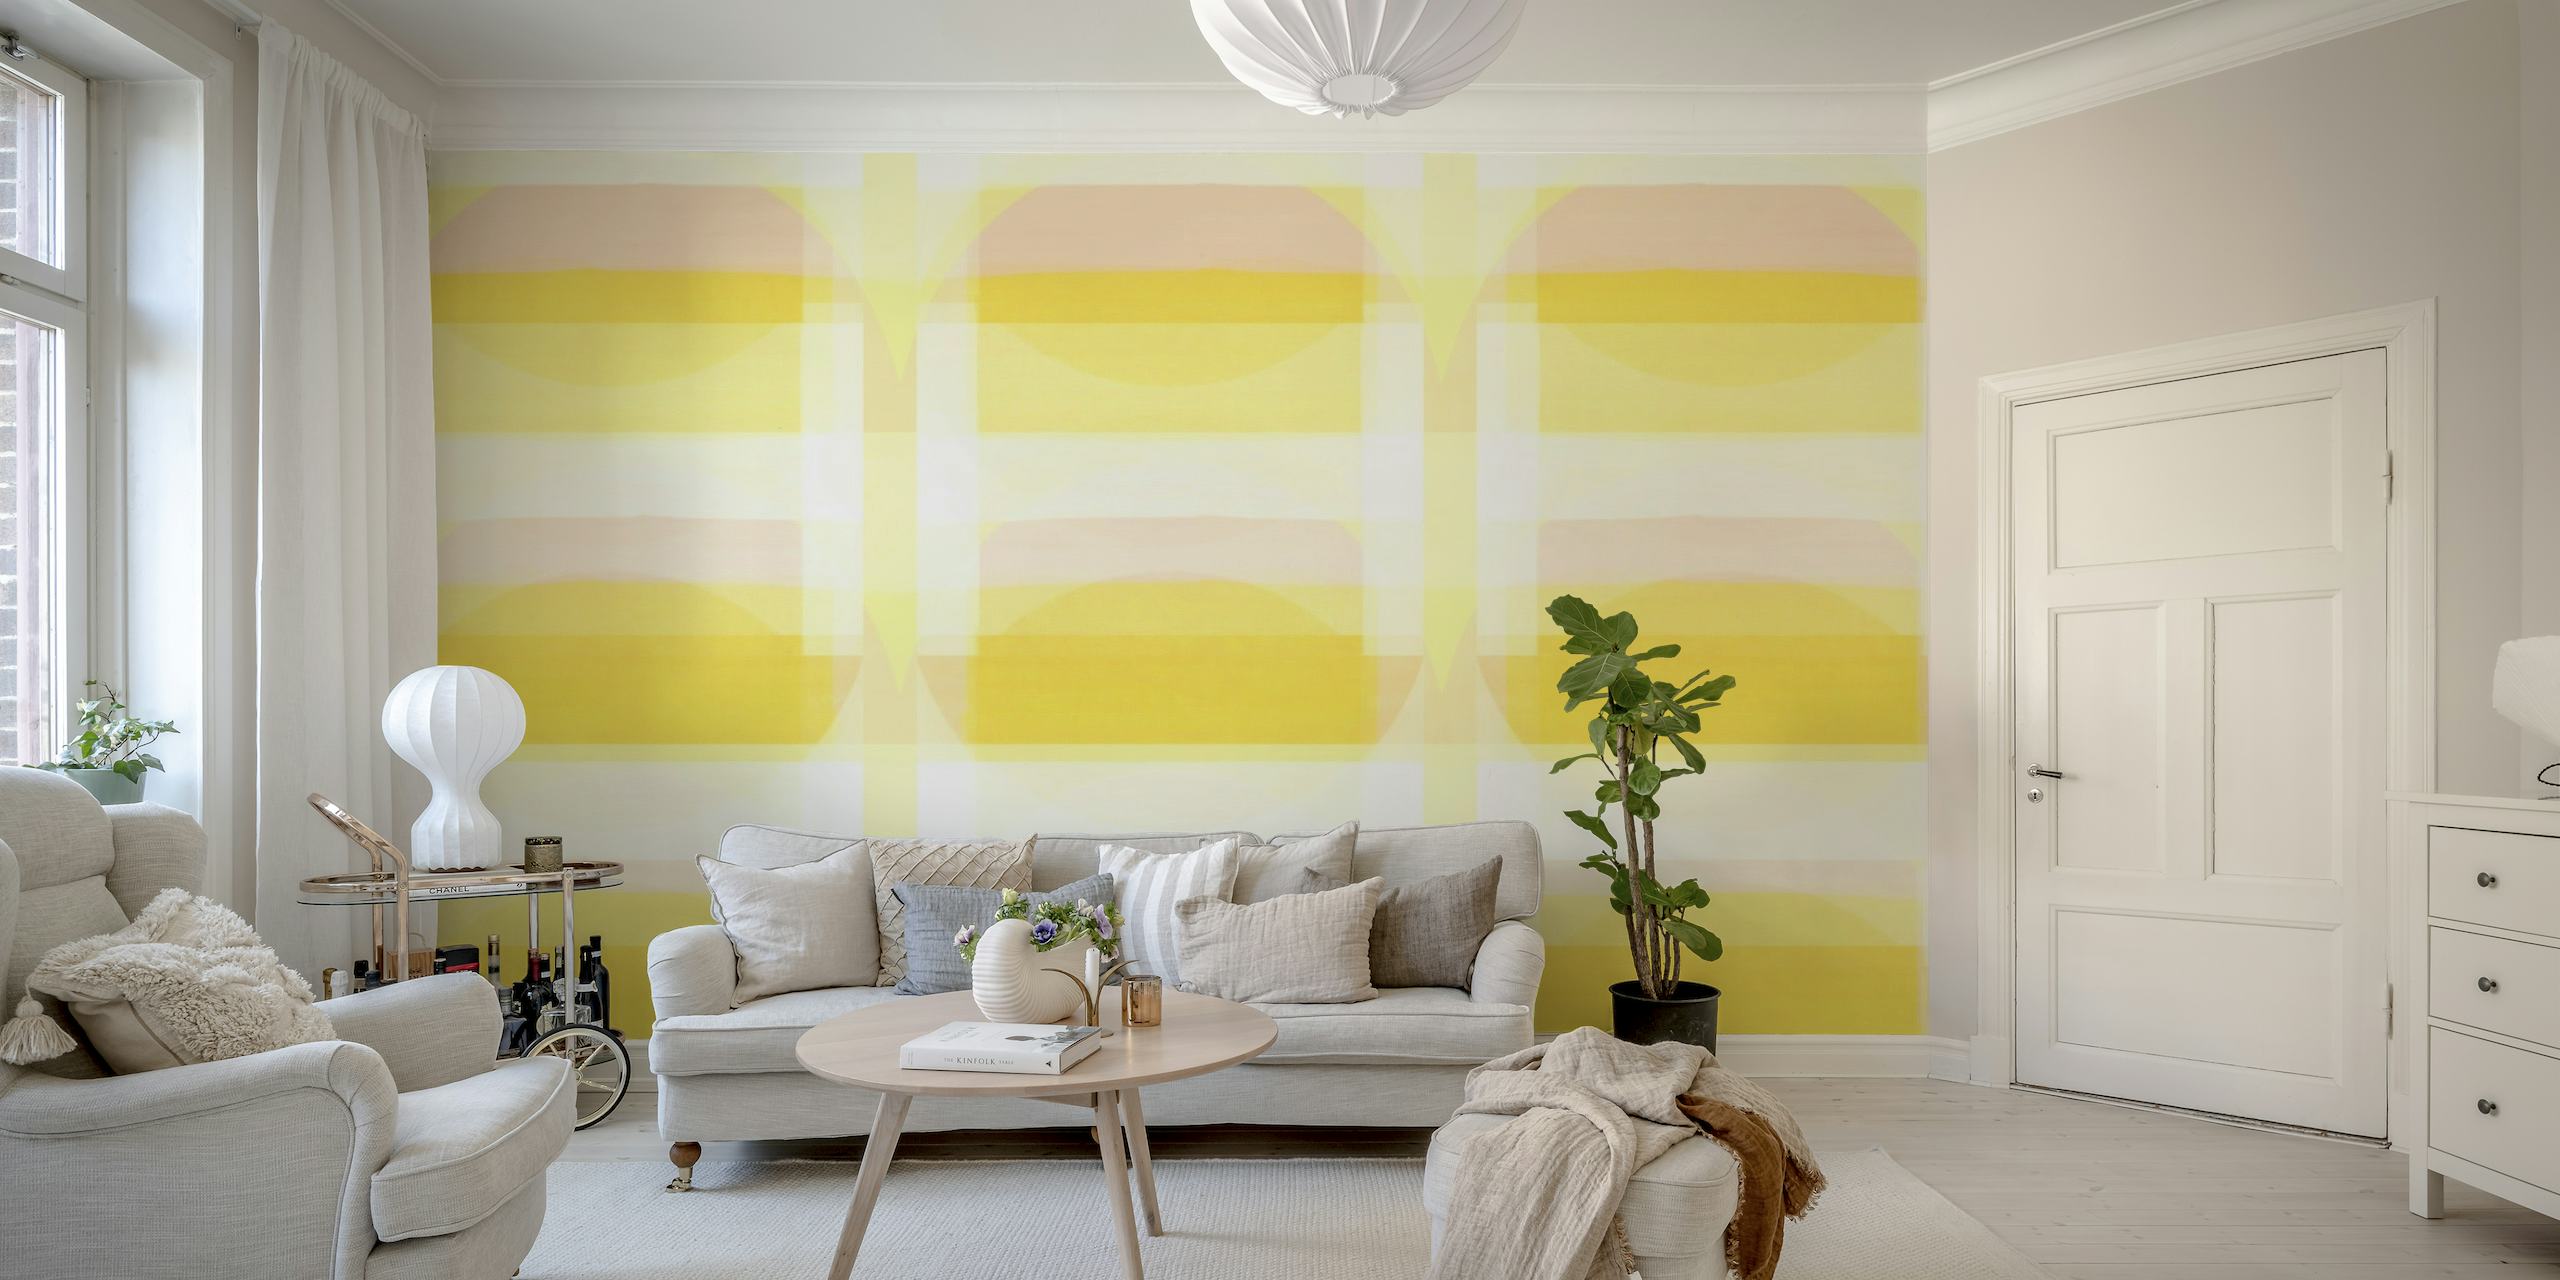 Fototapeta Sunny Bauhaus s geometrickým vzorem v pastelově žluté a bílé